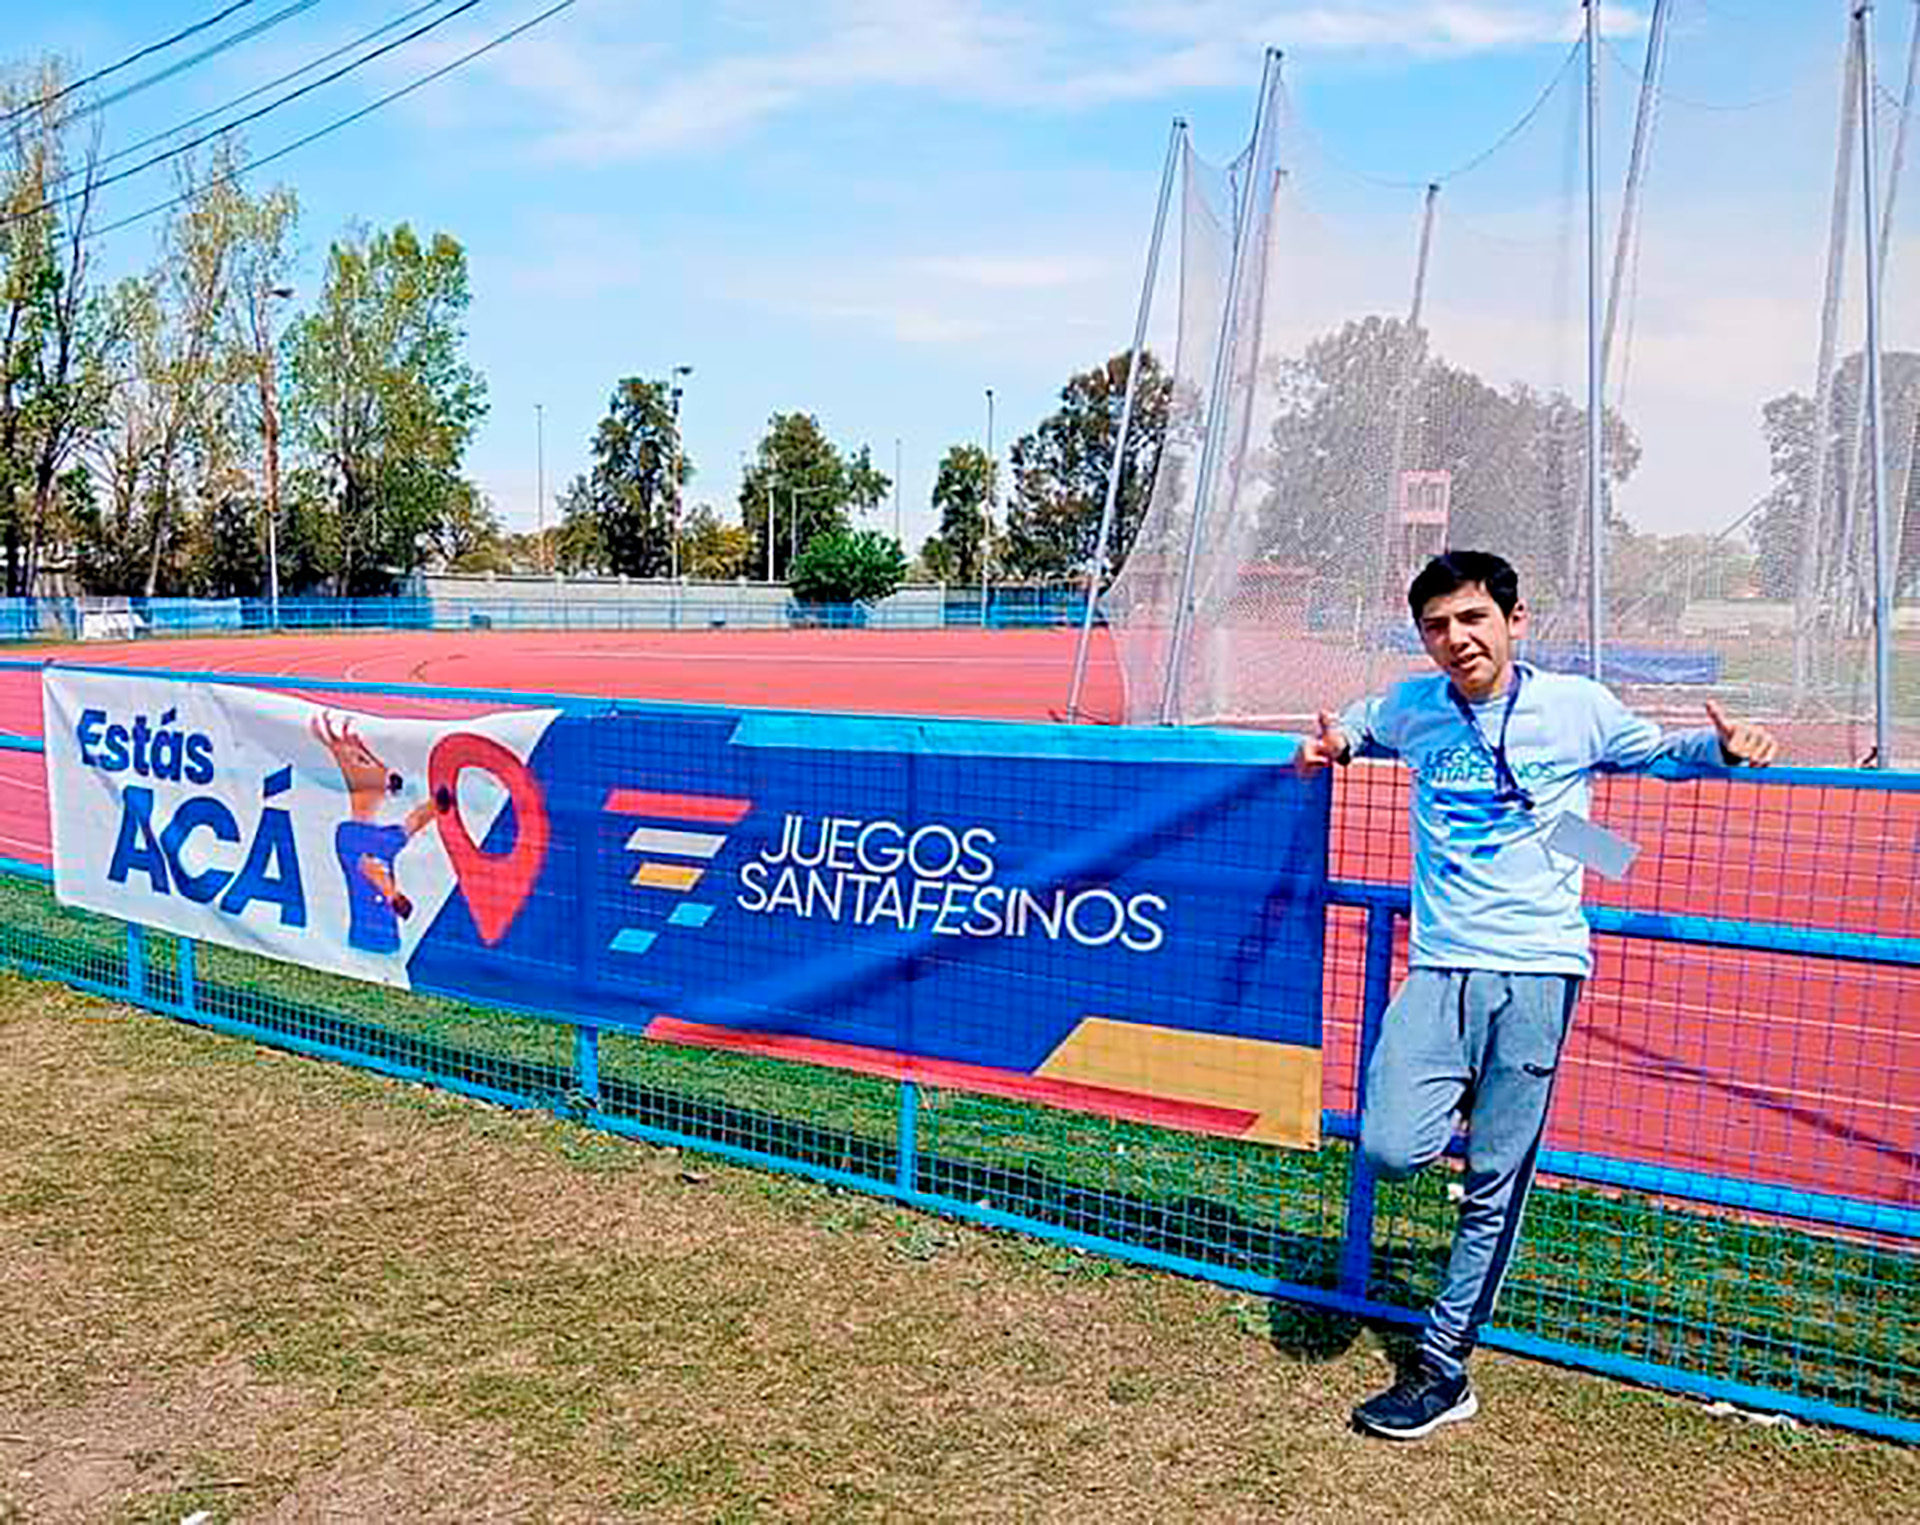 Luca clasificó a los Juegos Nacionales Evita como segundo Mejor Jugador de Santa Fe en la categoría Sub 14